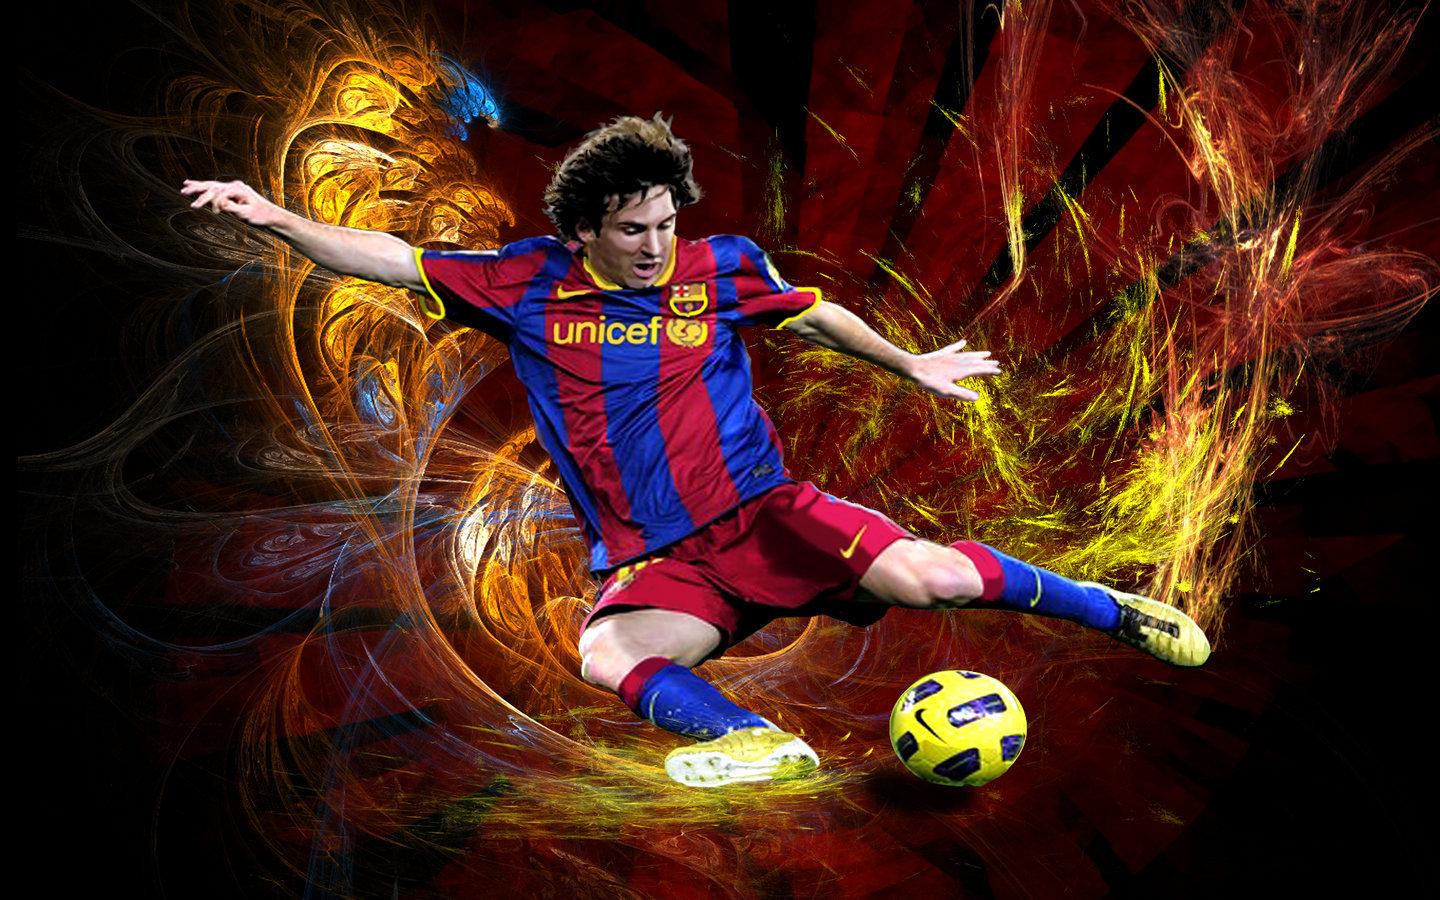 1440 x 900 · jpeg - Lionel Messi FC Barcelona Wallpaper - Lionel Andres Messi Wallpaper ...